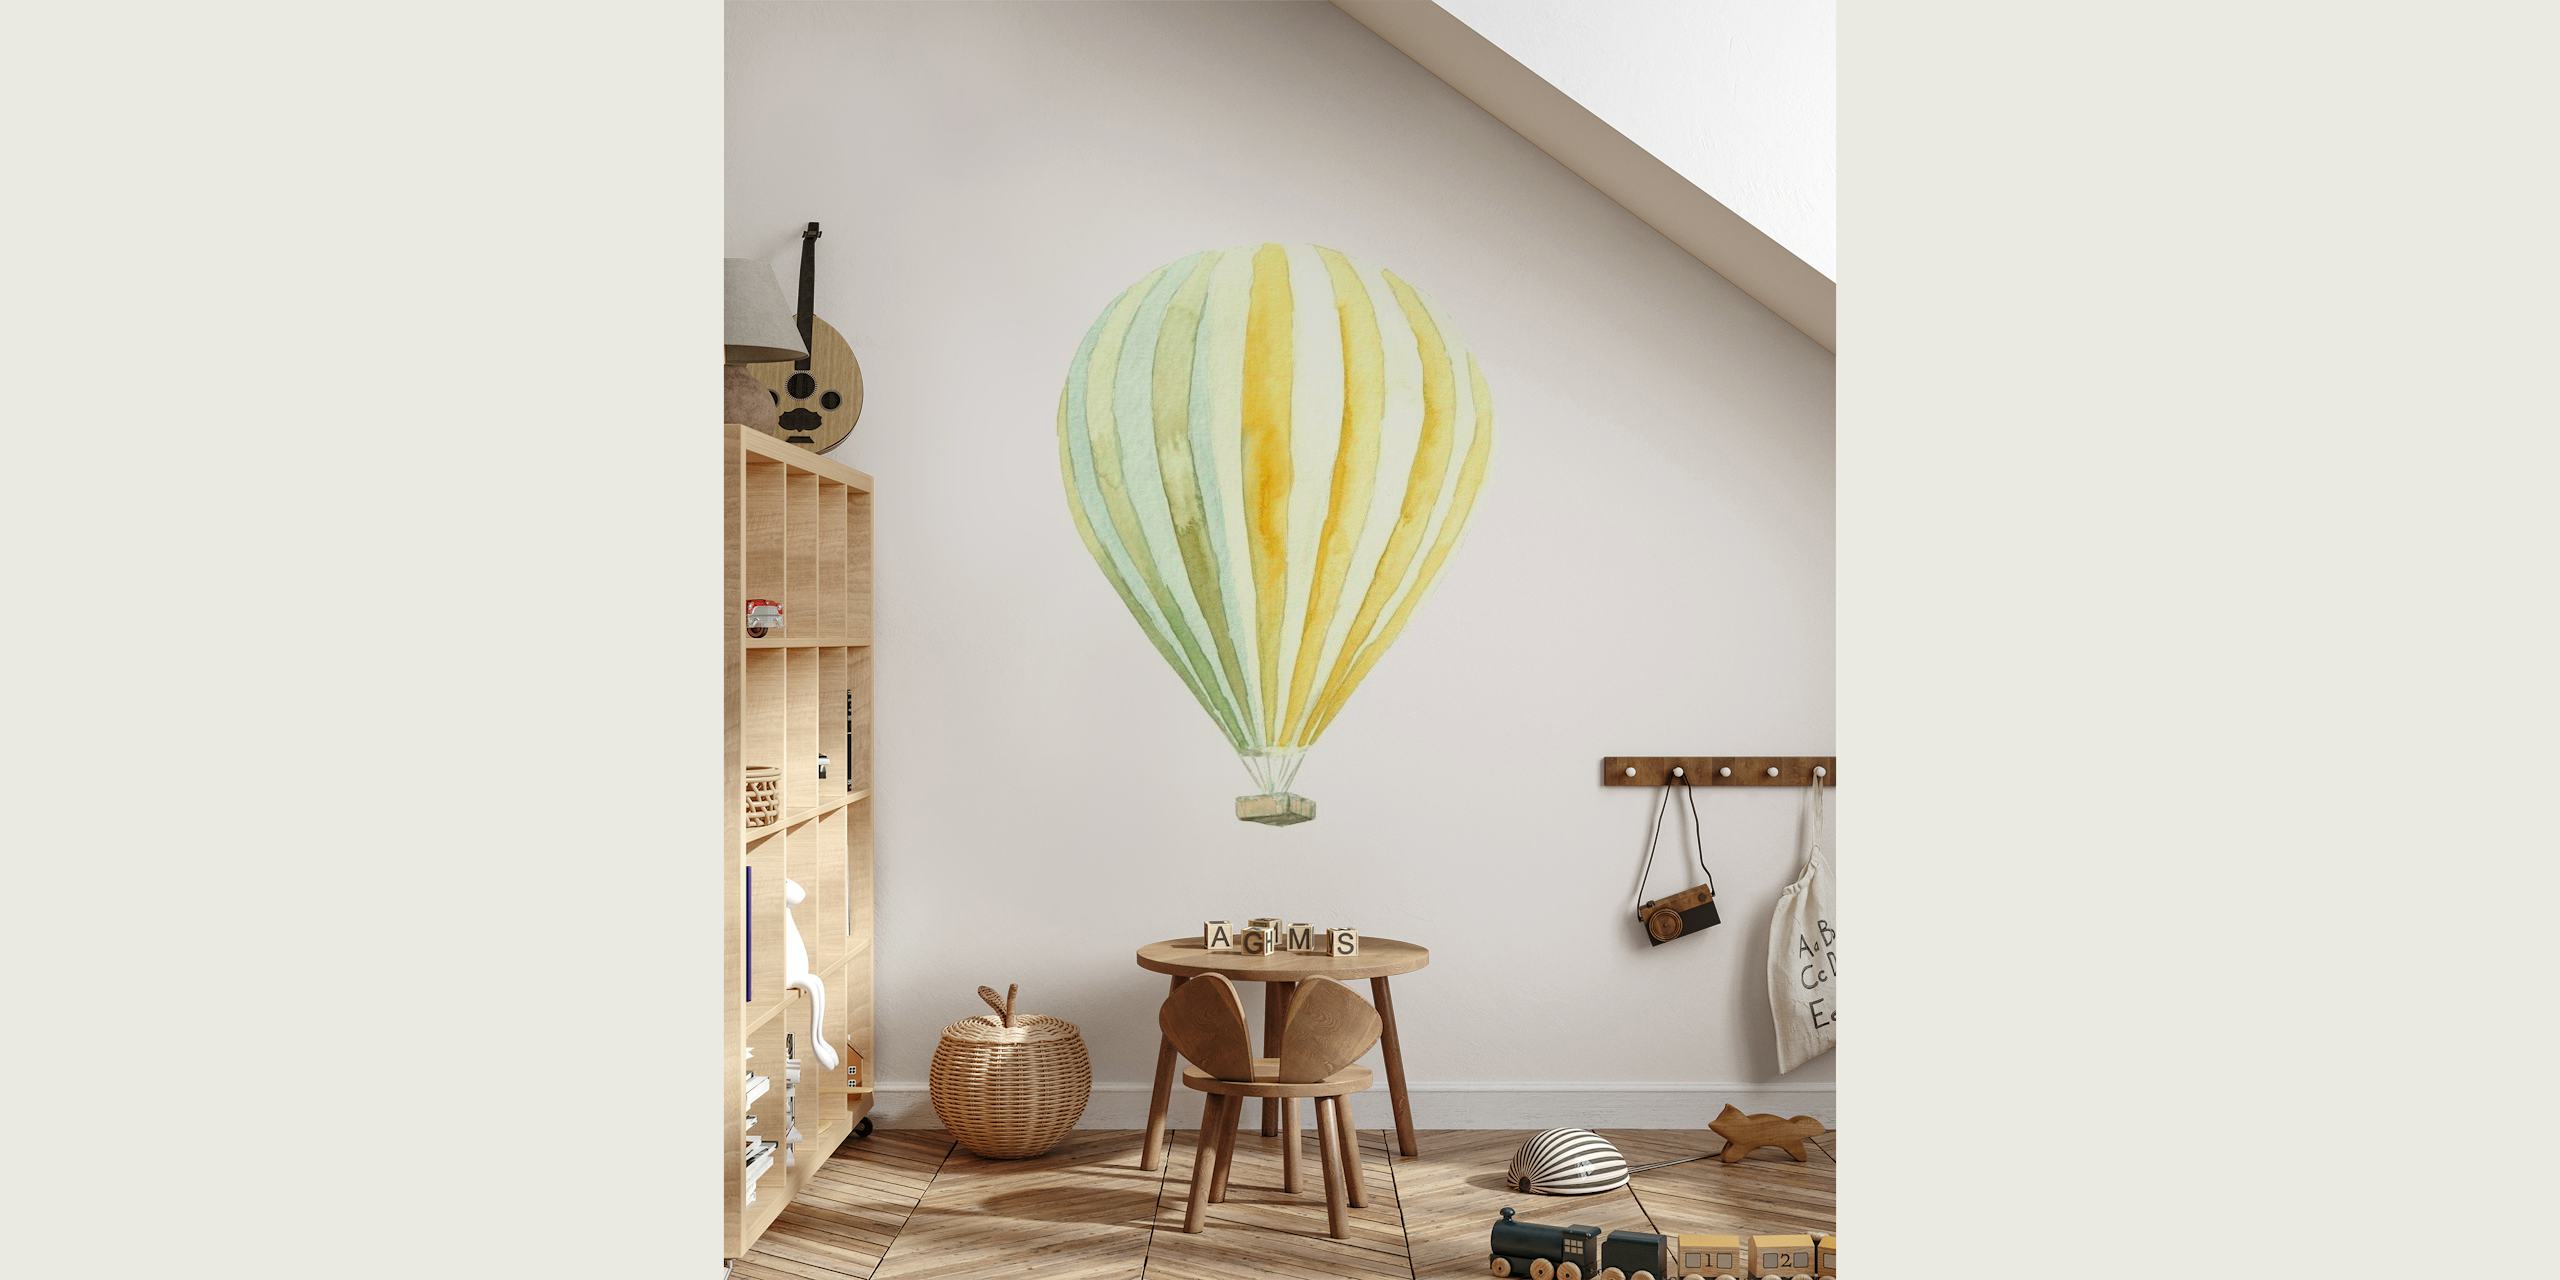 Nursery Room // Balloon behang